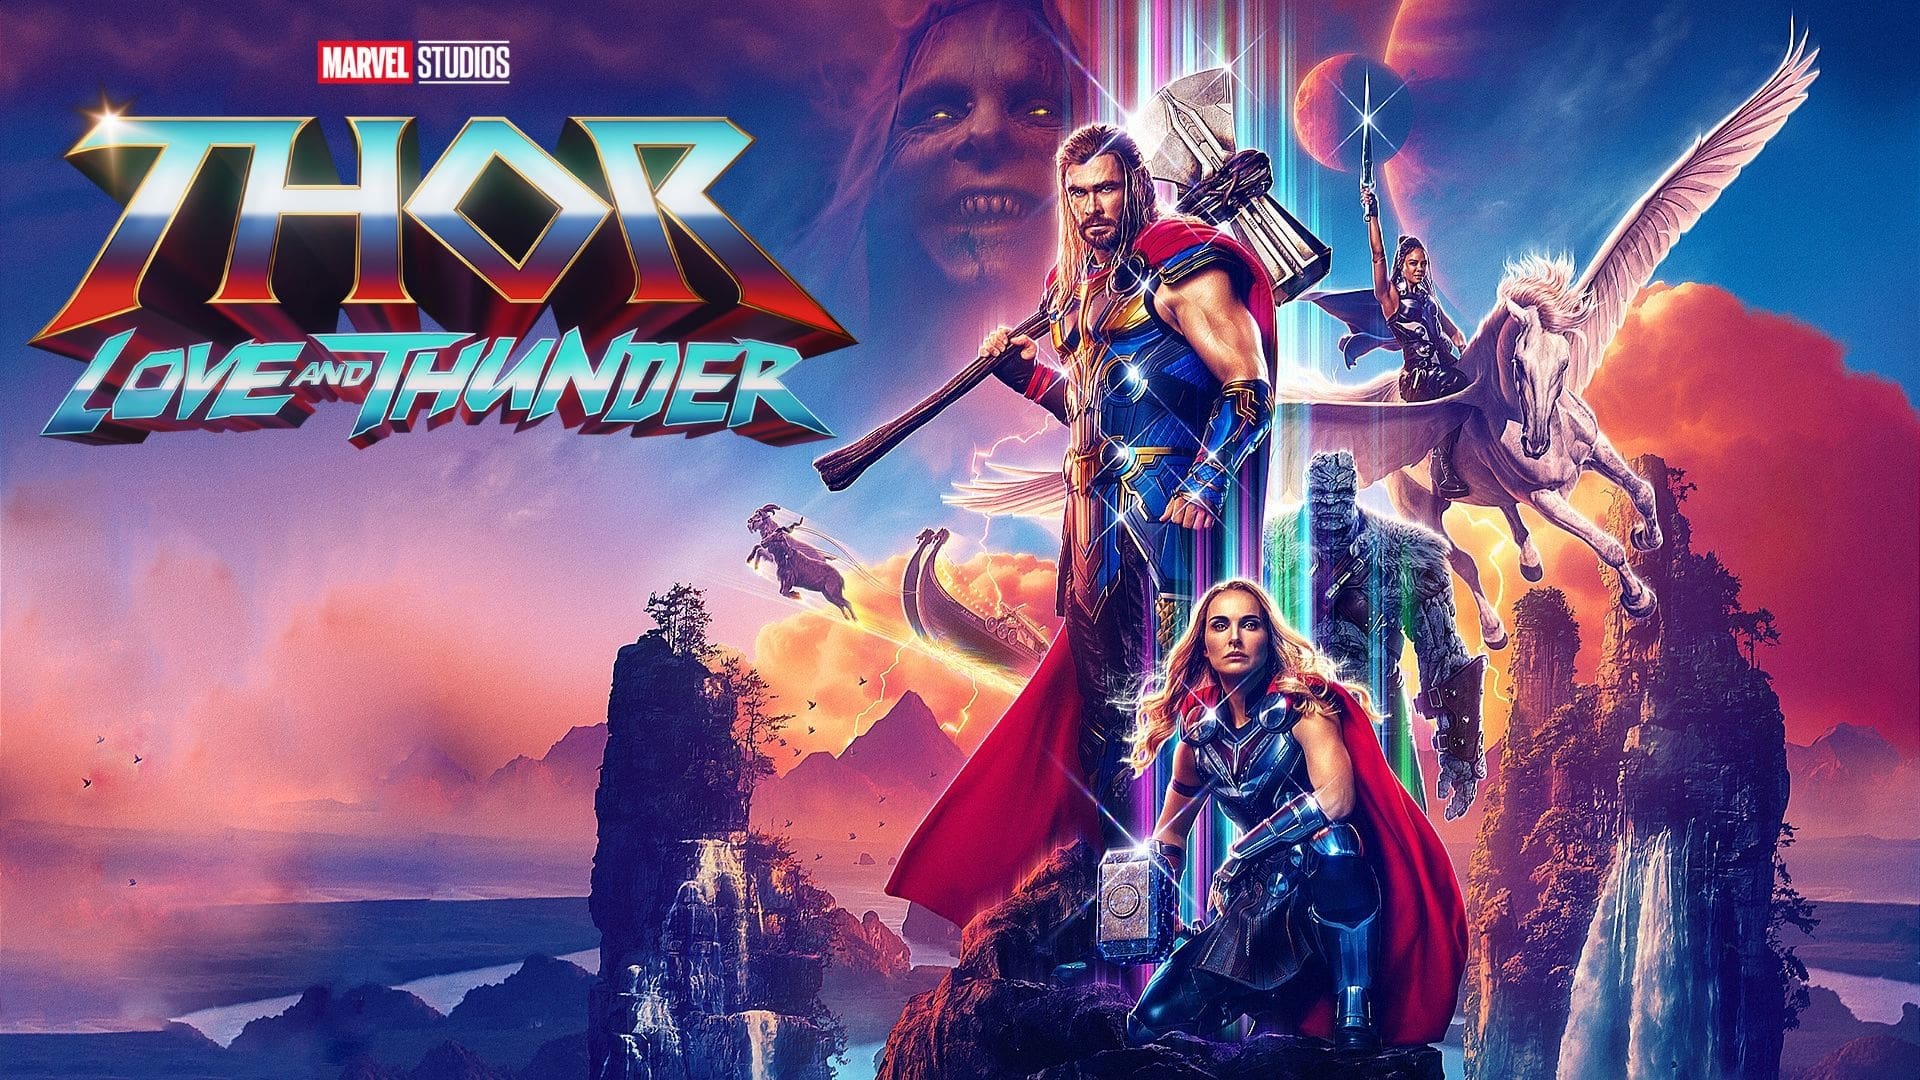 Thor: Cinta dan Guntur (2022)